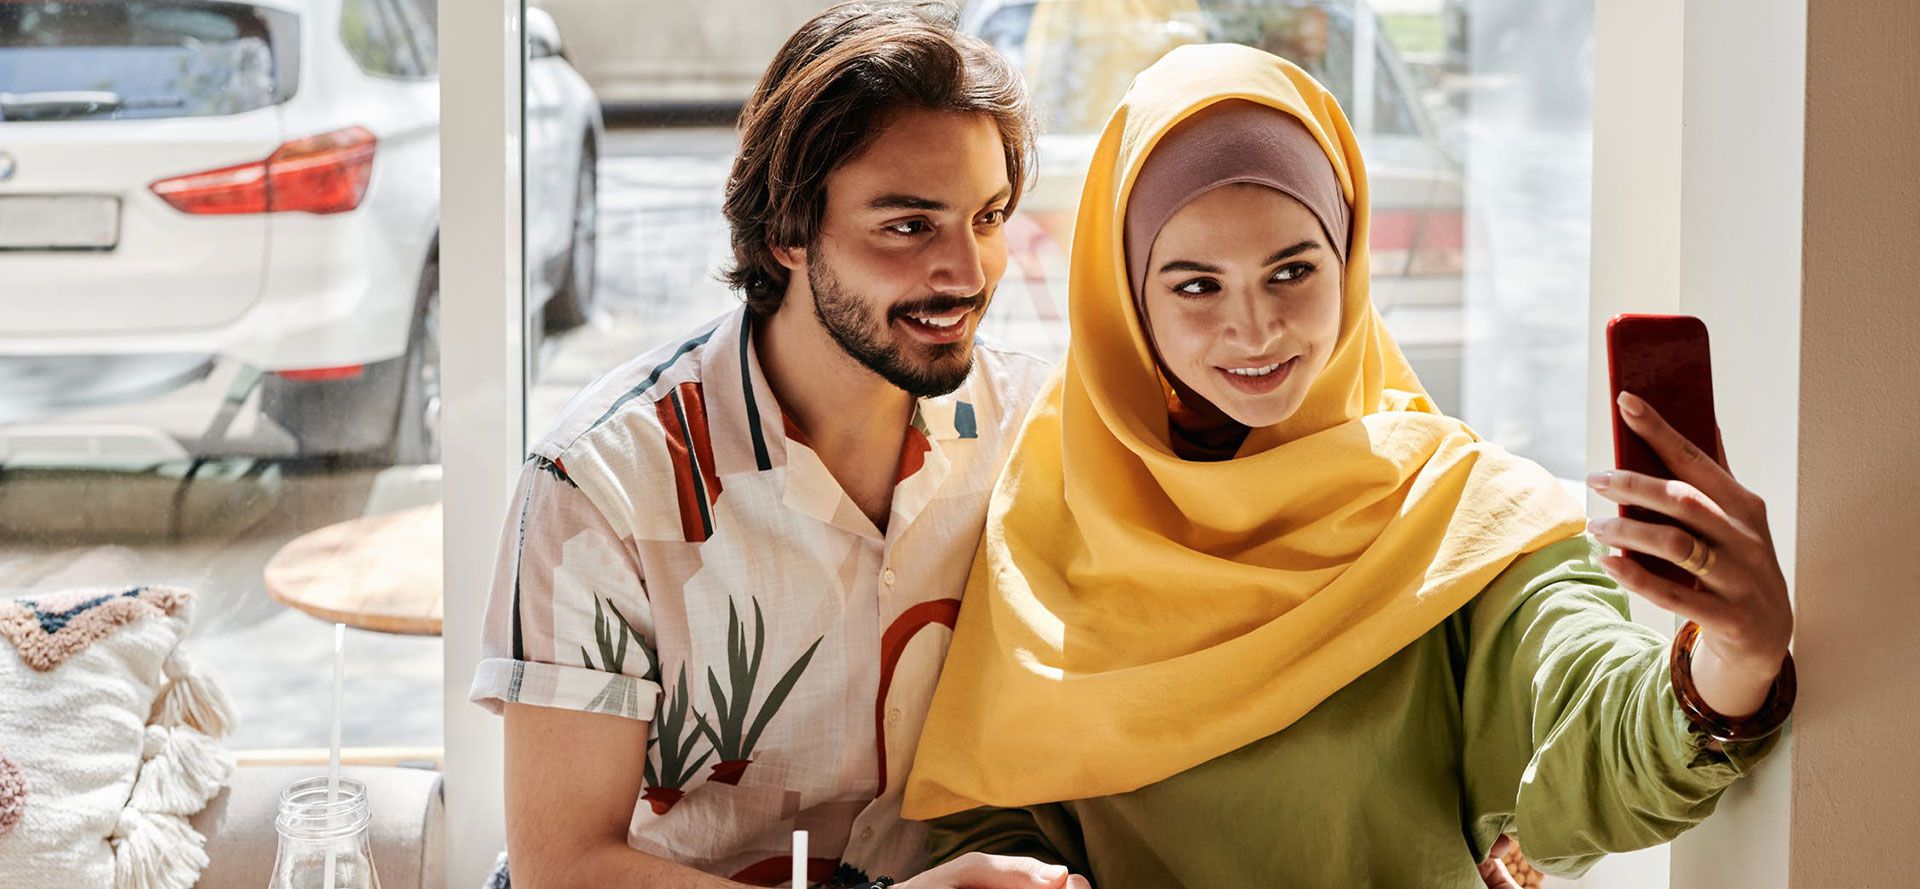 Müslüman kadın erkek arkadaşıyla selfie çekiyor.